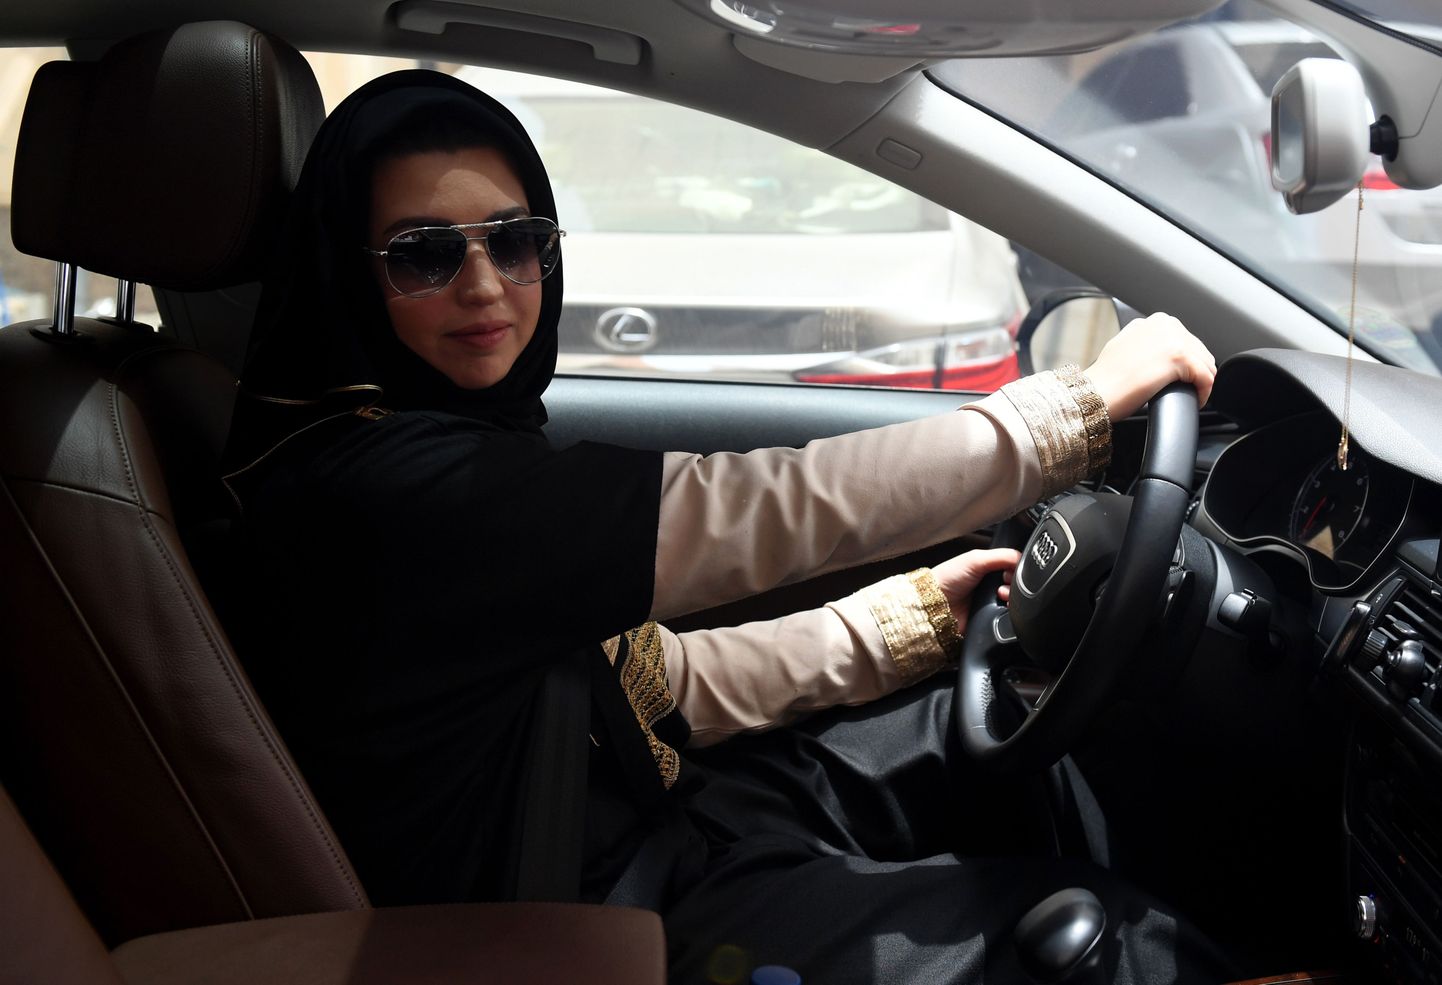 Äsja load saanud Daniah al-Ghalbi on valmis oma autoga peagi sõitma asuma.